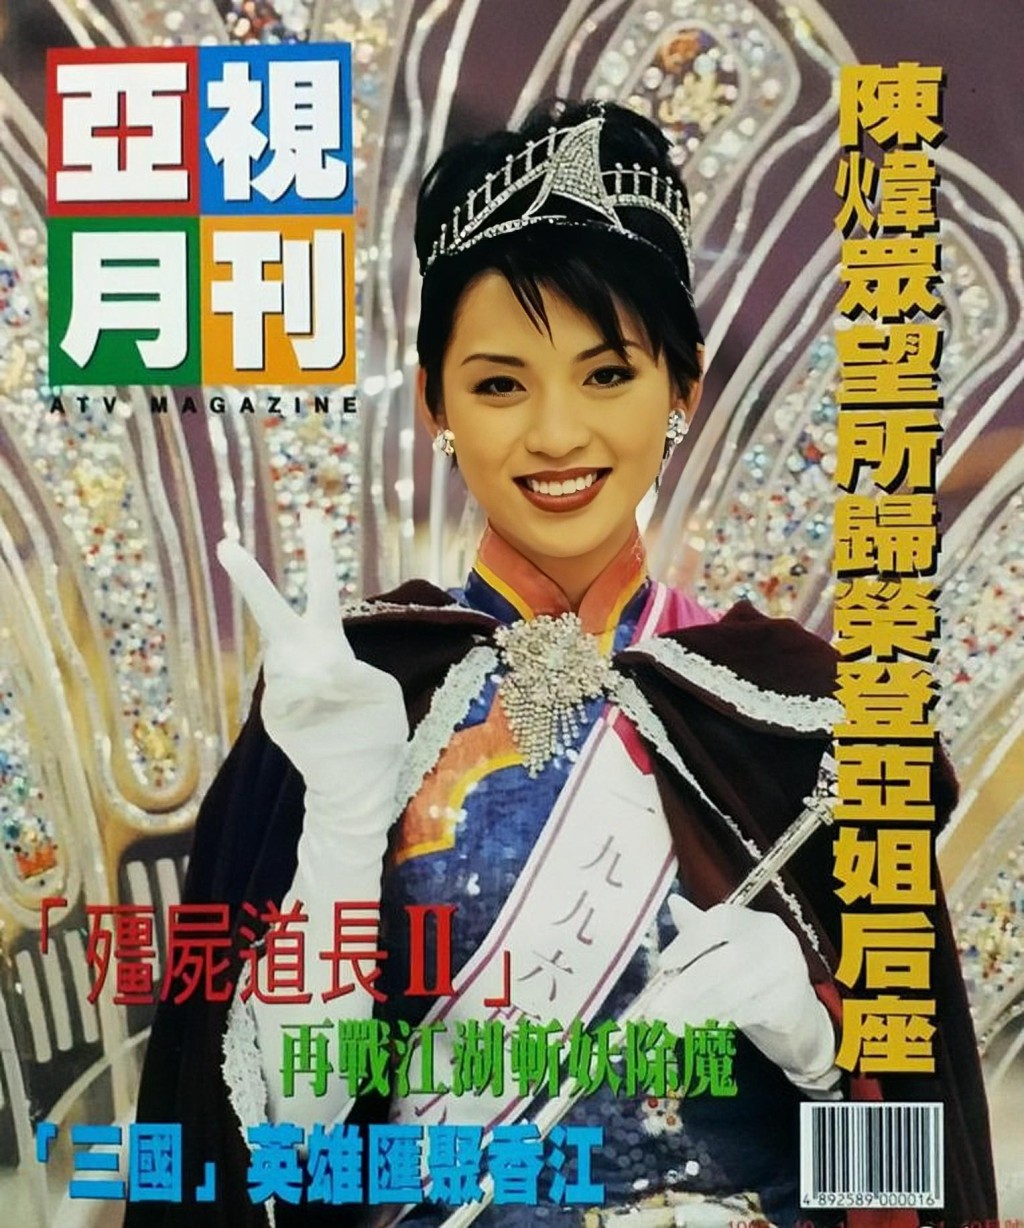 近日有网民于facebook专页「90年代回忆」分享一张亚视月刊的封面照。